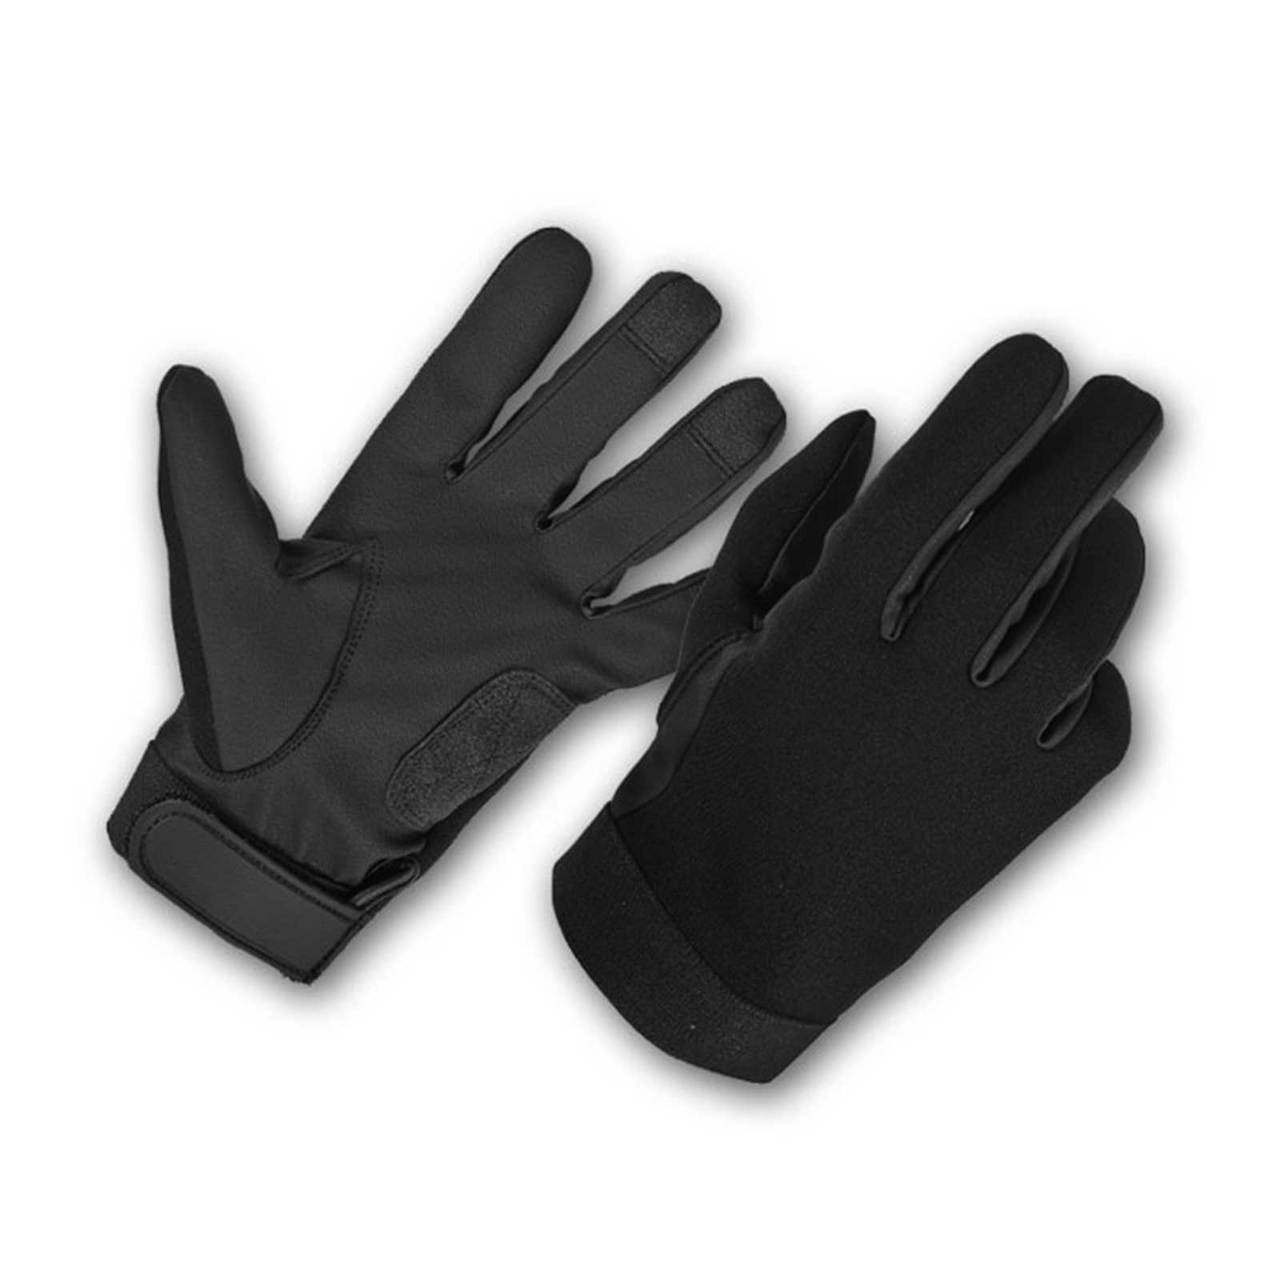 ArmorFlex Neoprene Unlined All Weather Duty Shooting Gloves